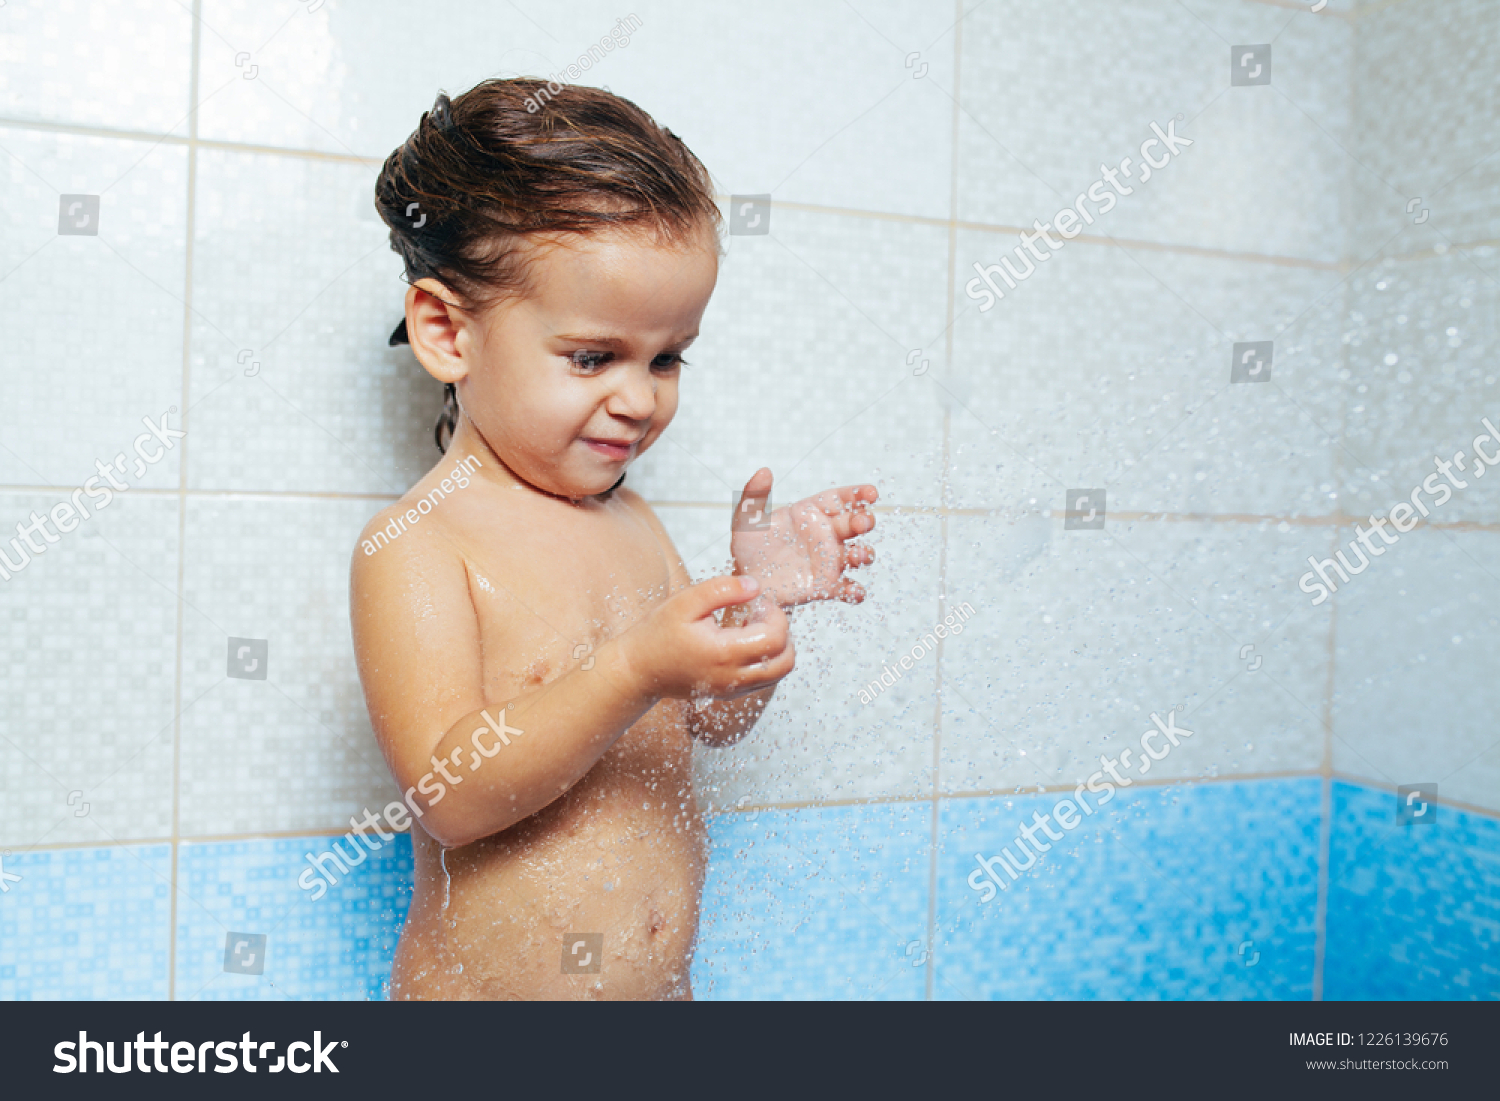 naked toddler girls and boy shower together